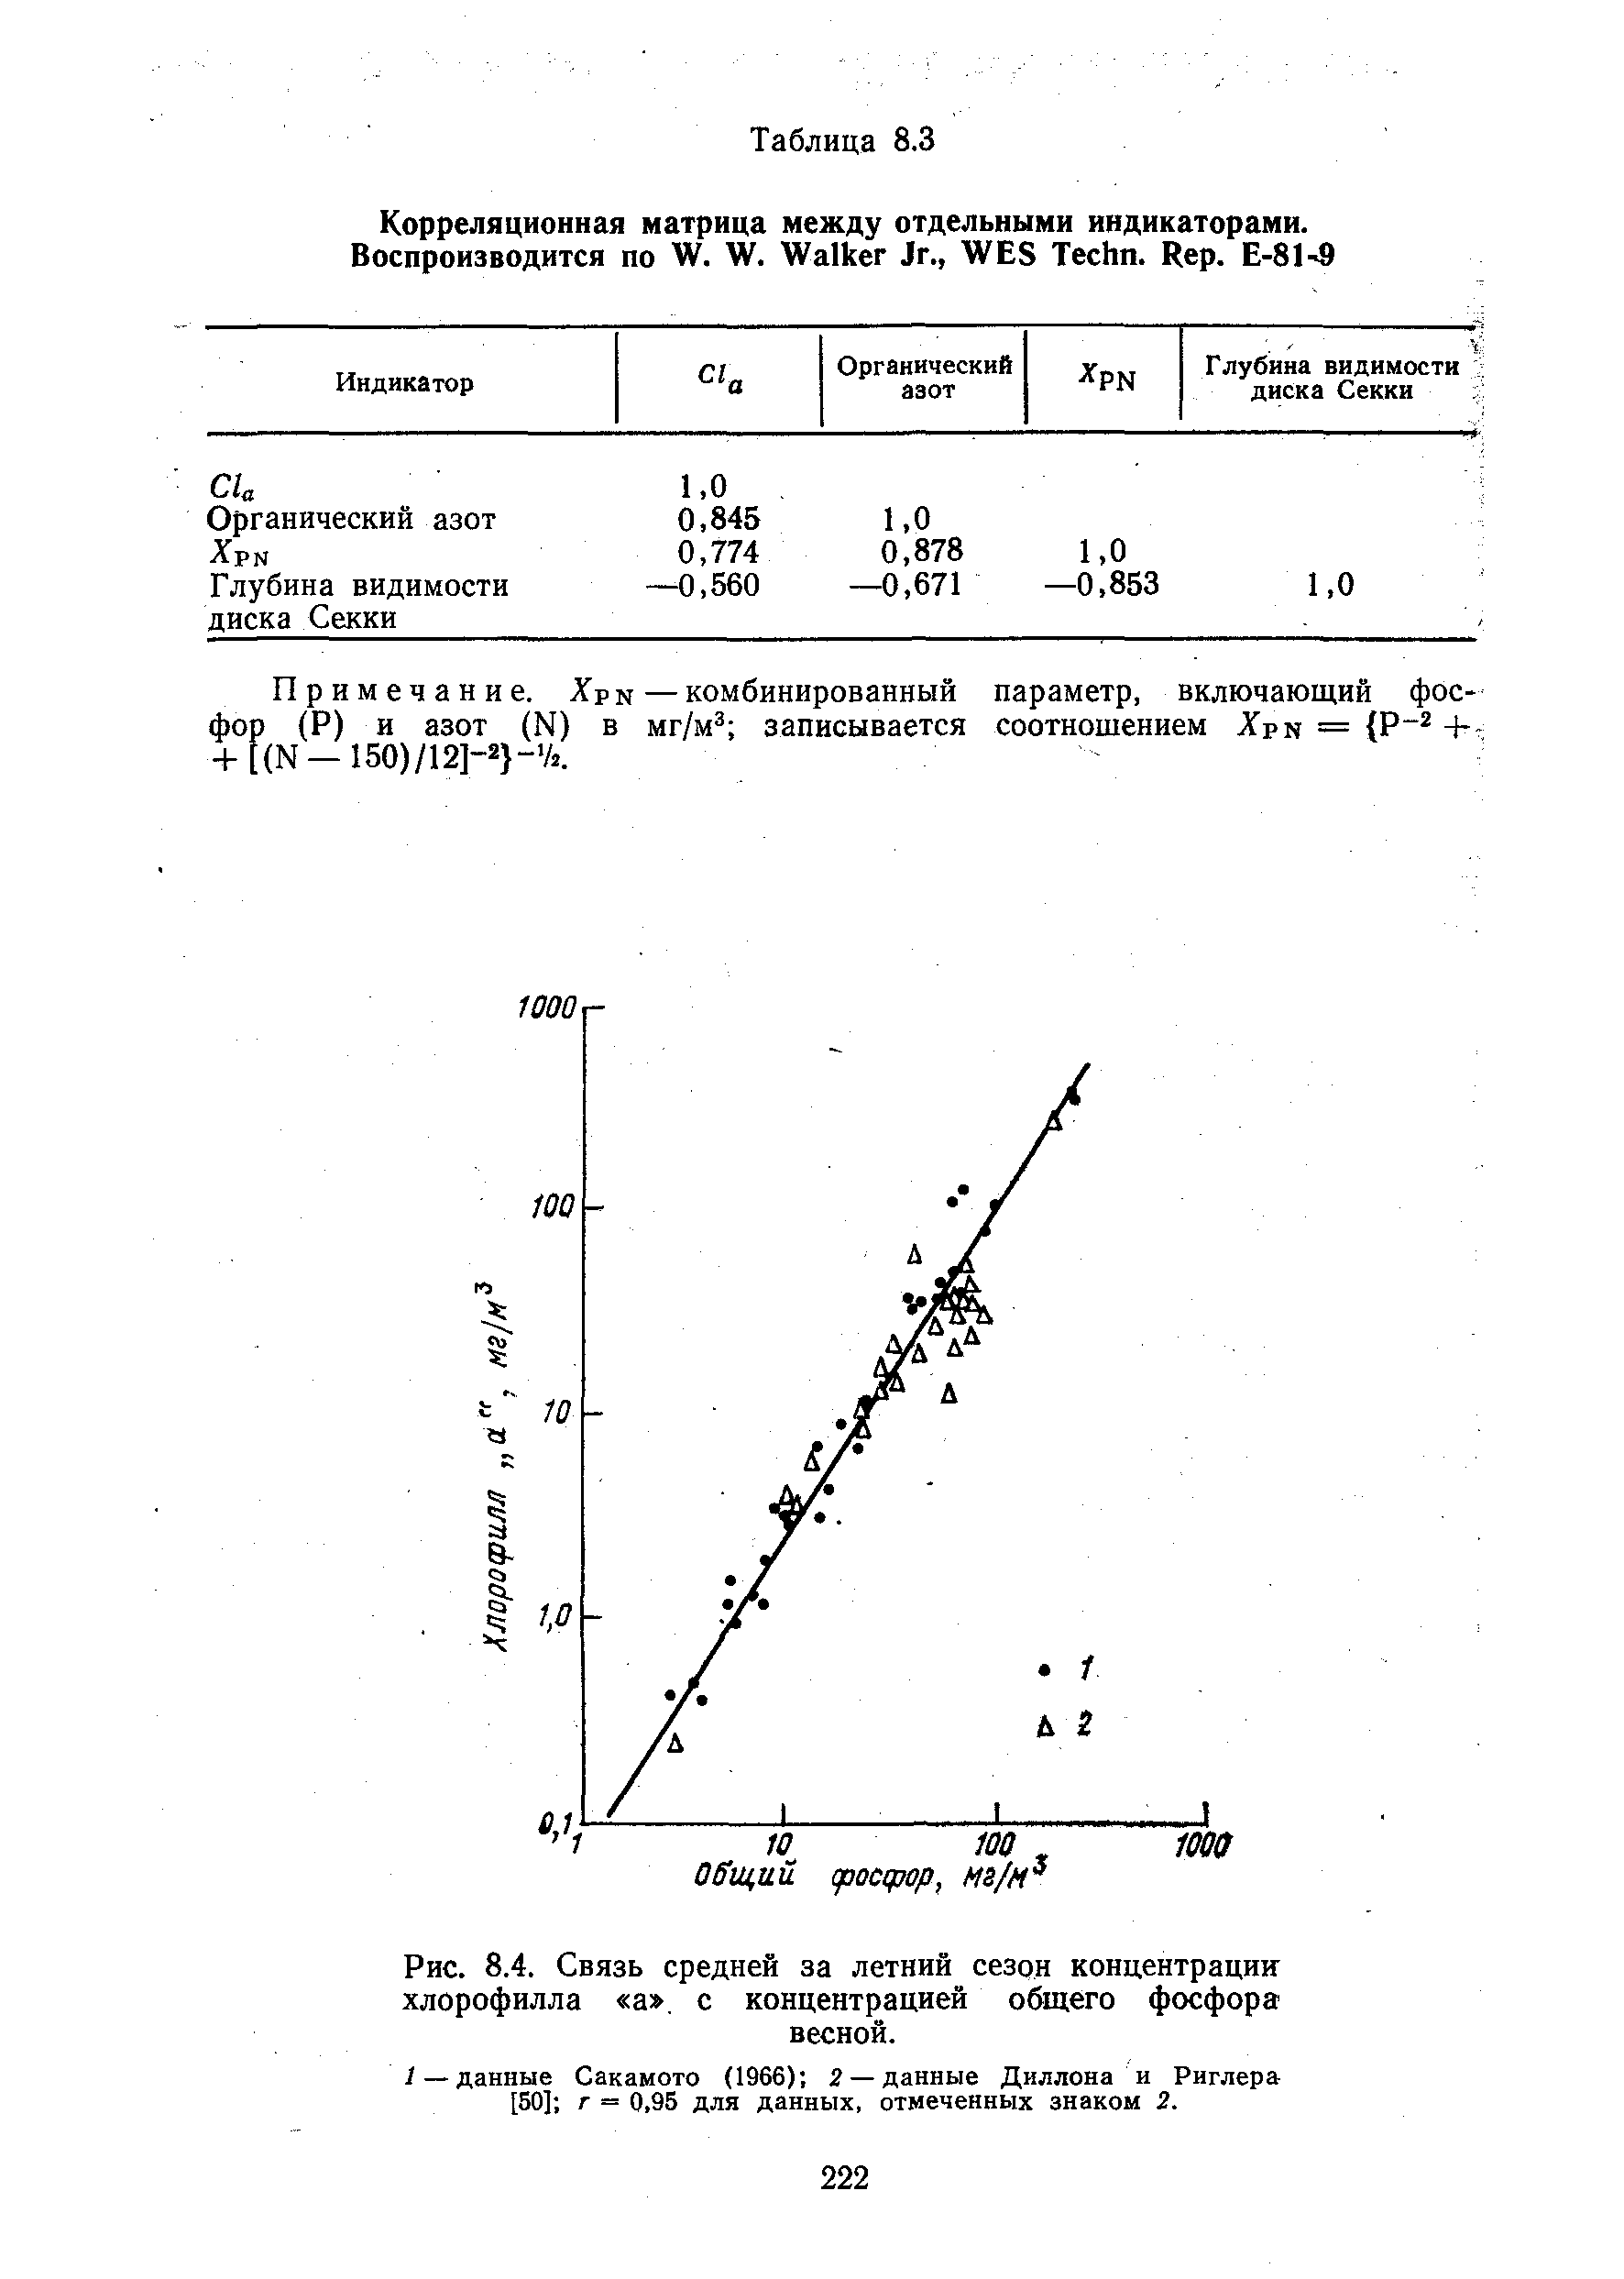 Примечание. XpN — комбинированный параметр, включающий фосфор (Р) и азот (М) в мг/м записывается соотношением Хрк = Р +-+ (М-150)/12]-2 - А.